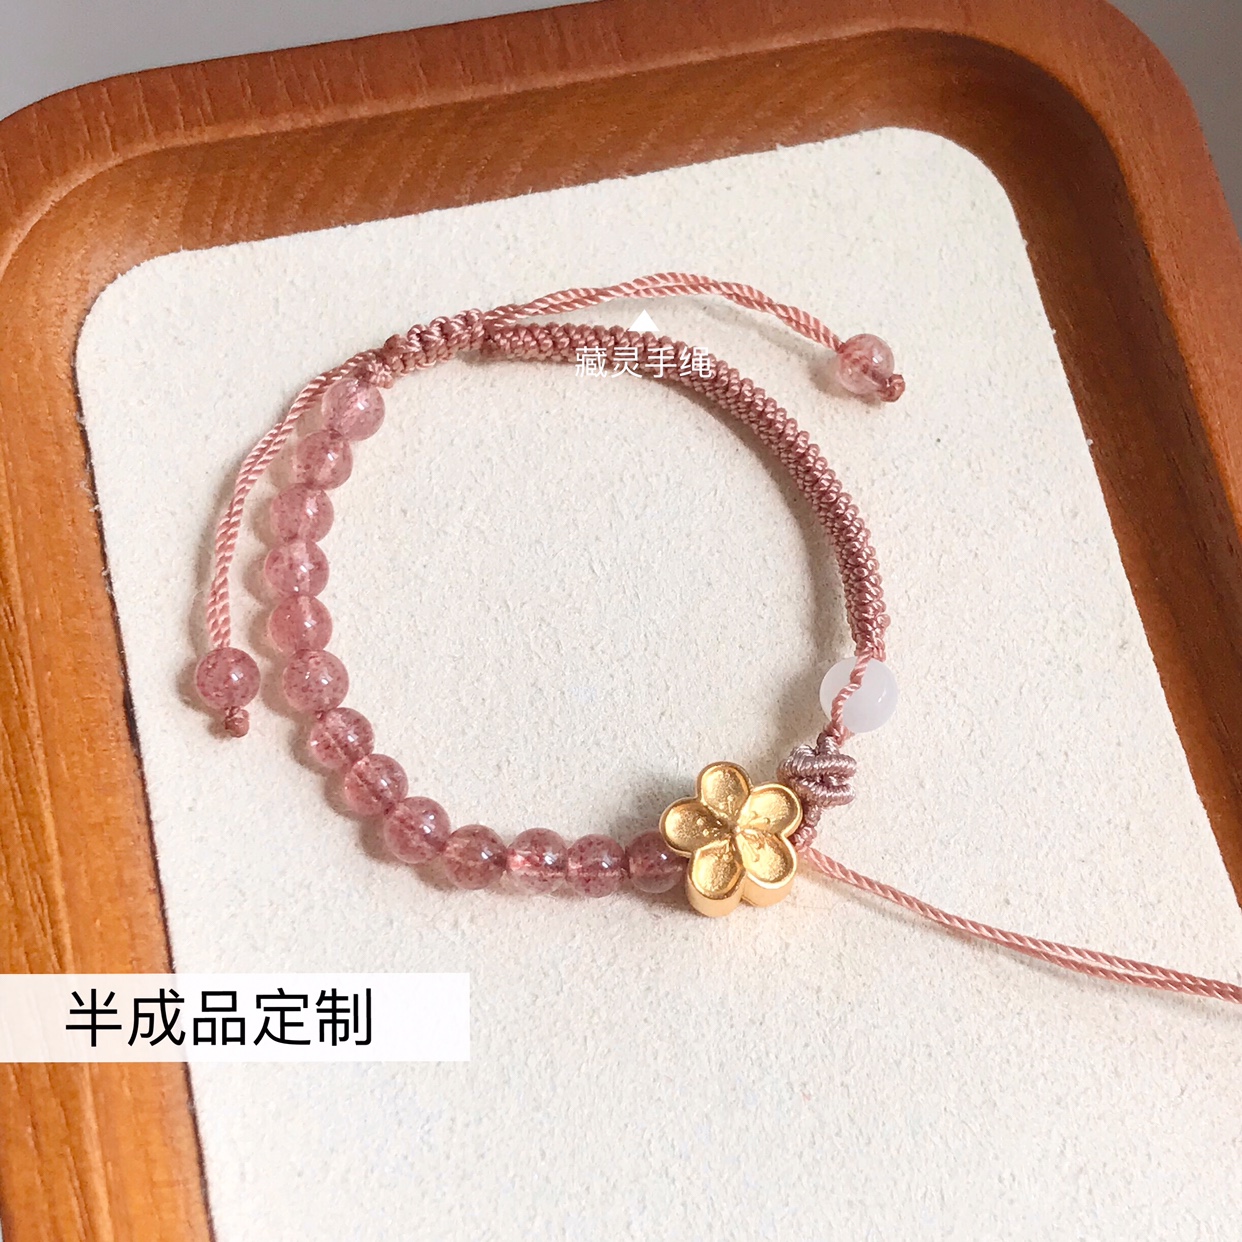 手工编织红绳手链招桃花草莓晶水晶可穿黄金珠半成品定制粉女宝宝